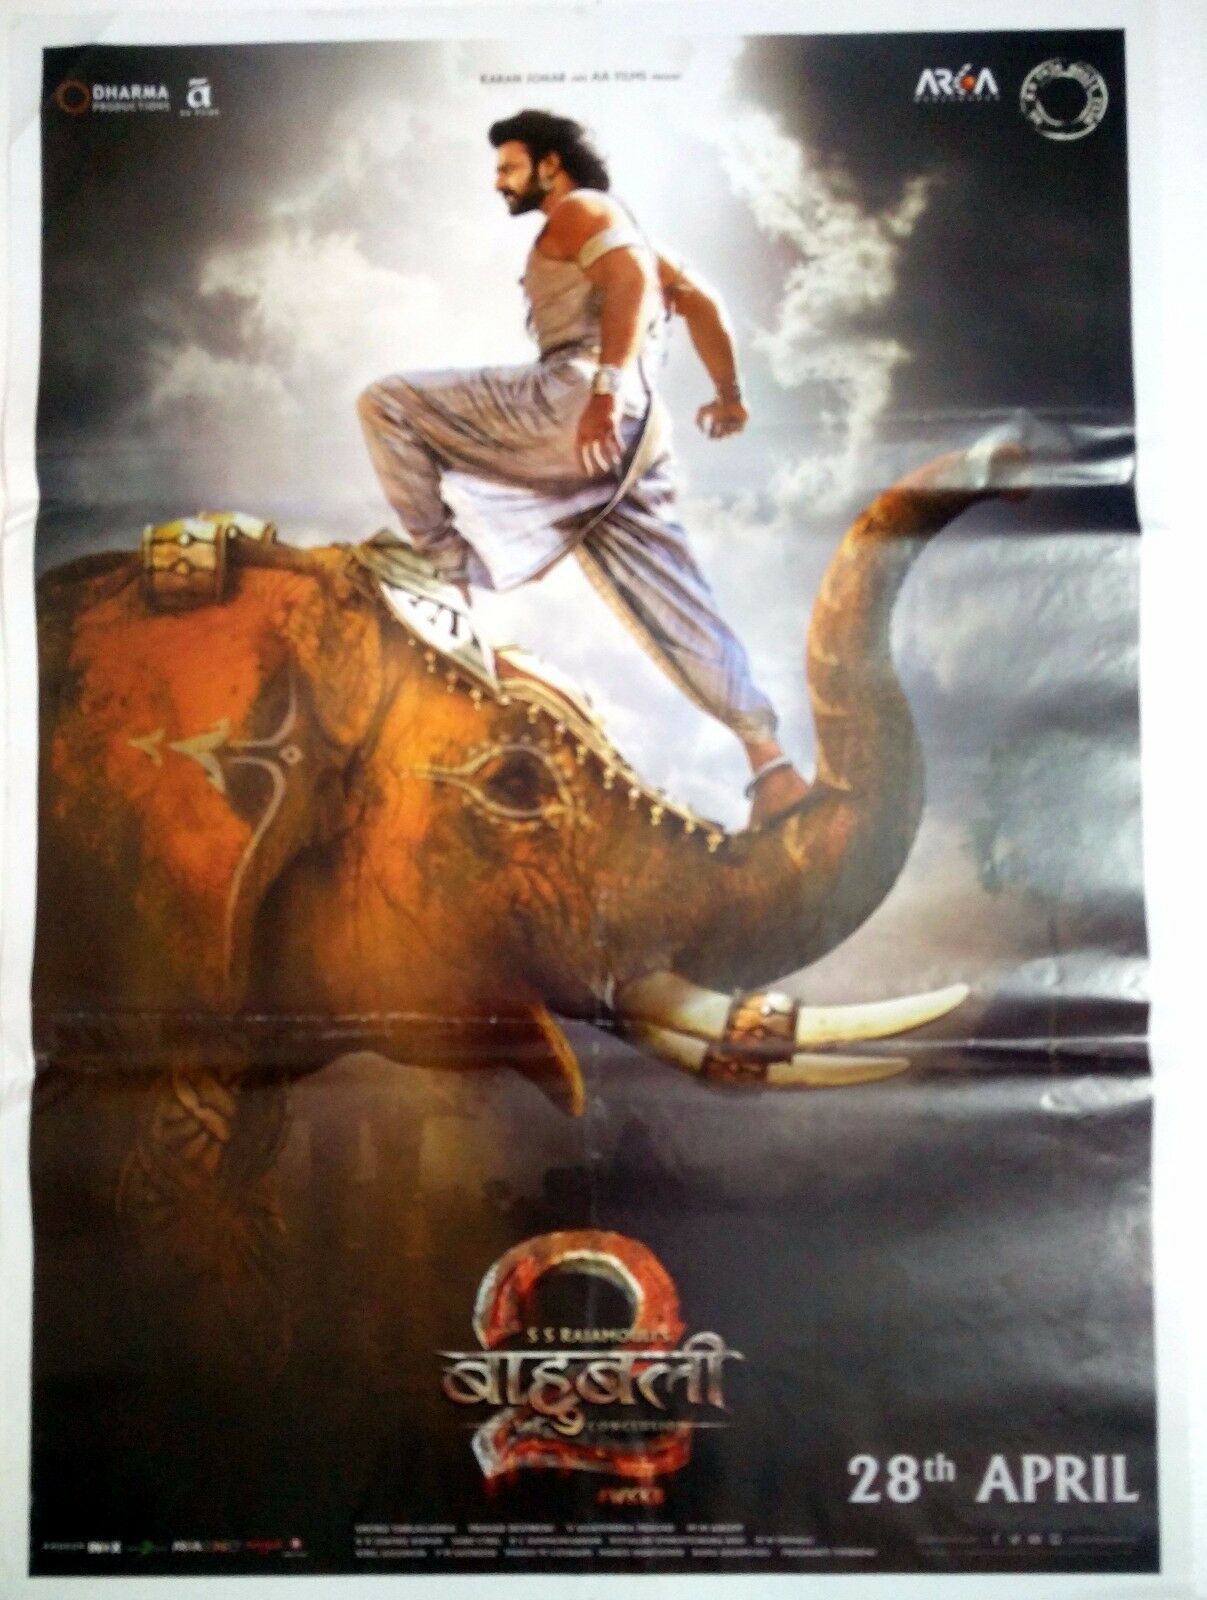 bahubali 1 full movie download in hindi